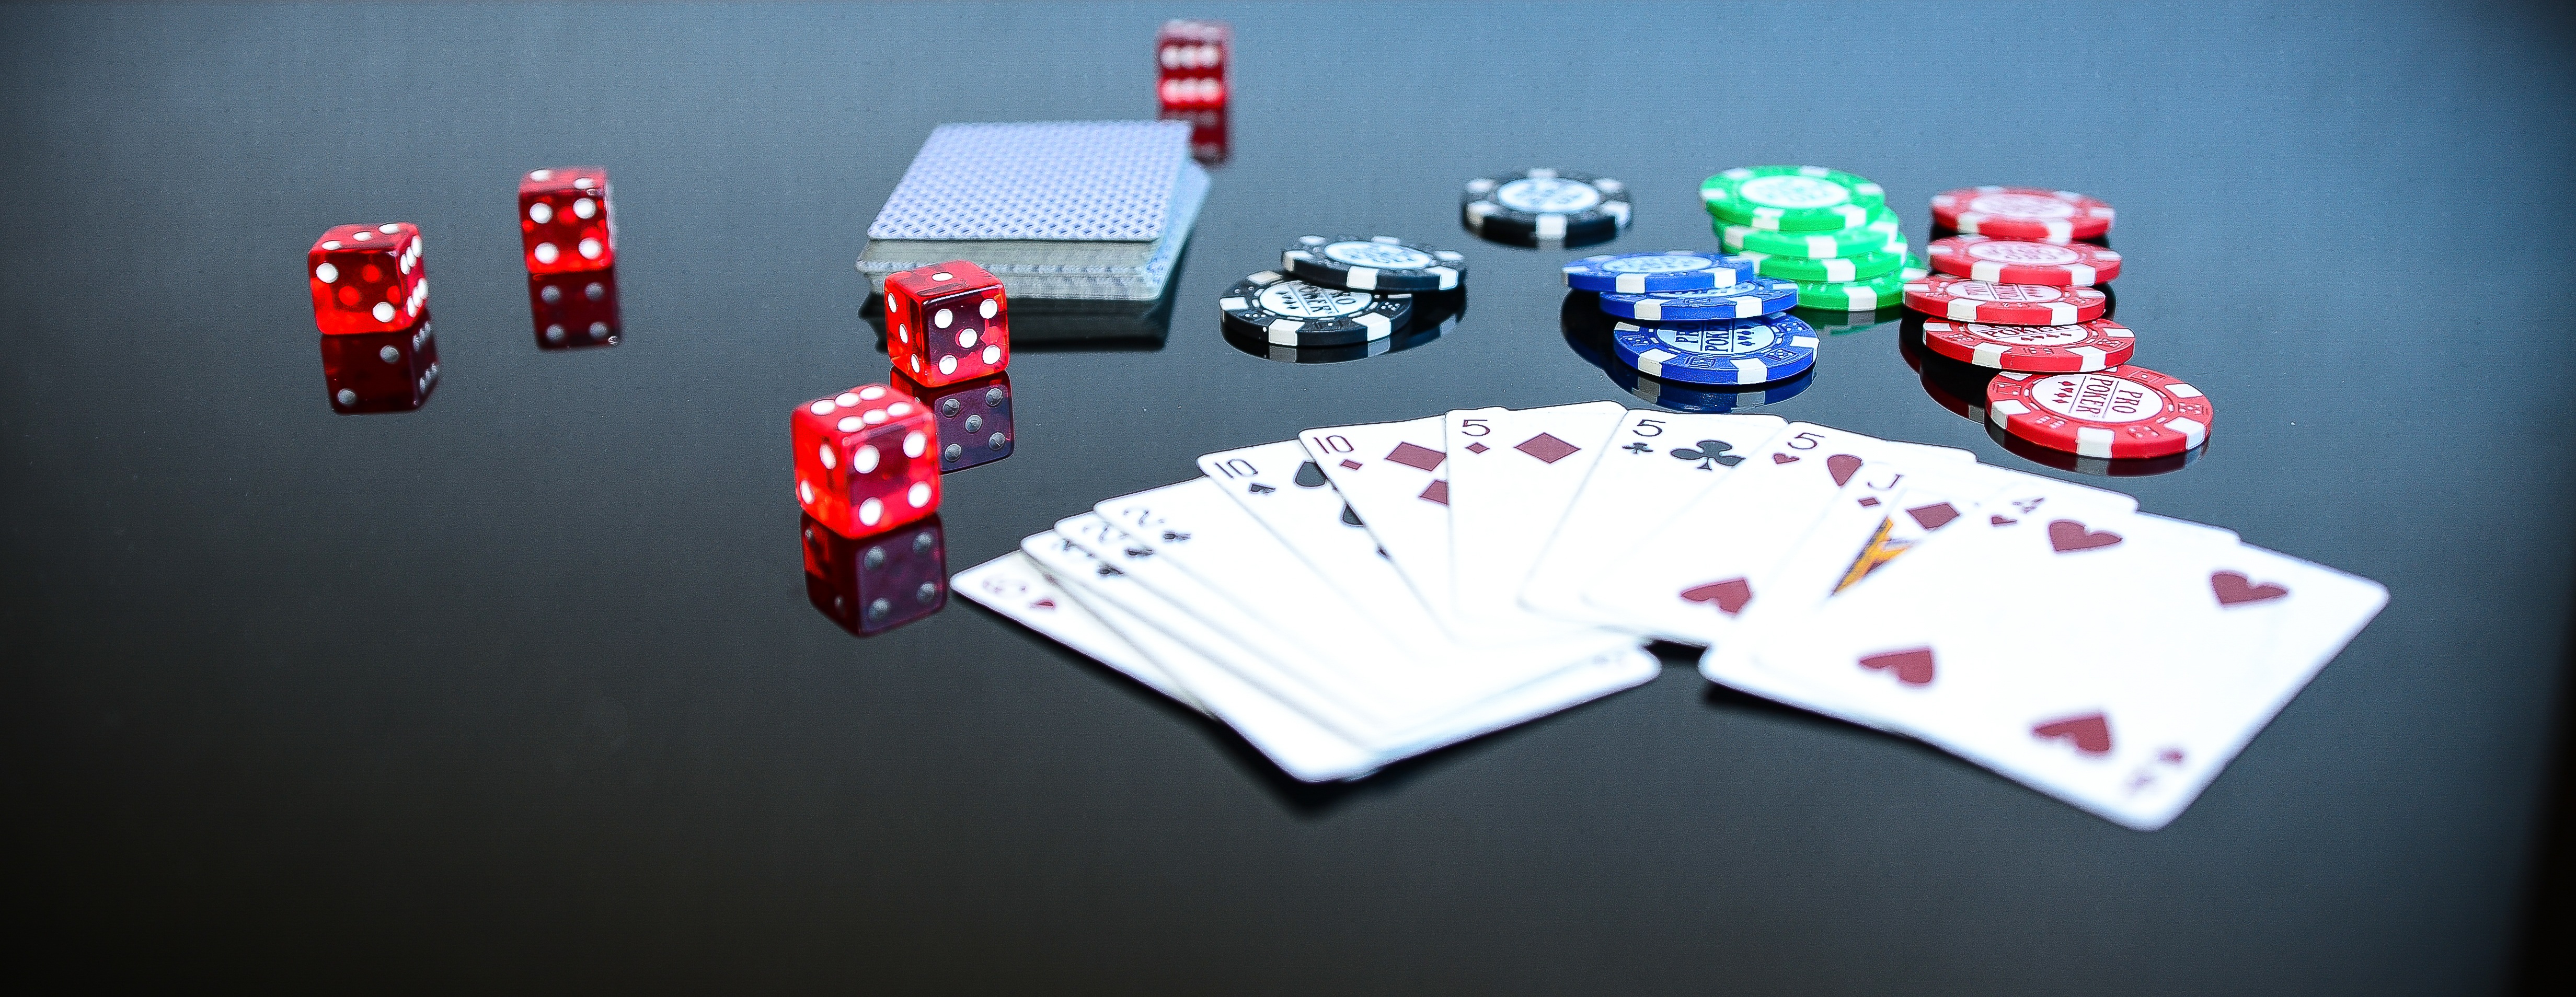 Futura vous présente une sélection des meilleurs logiciels d'aide au poker. © Pxhere.com